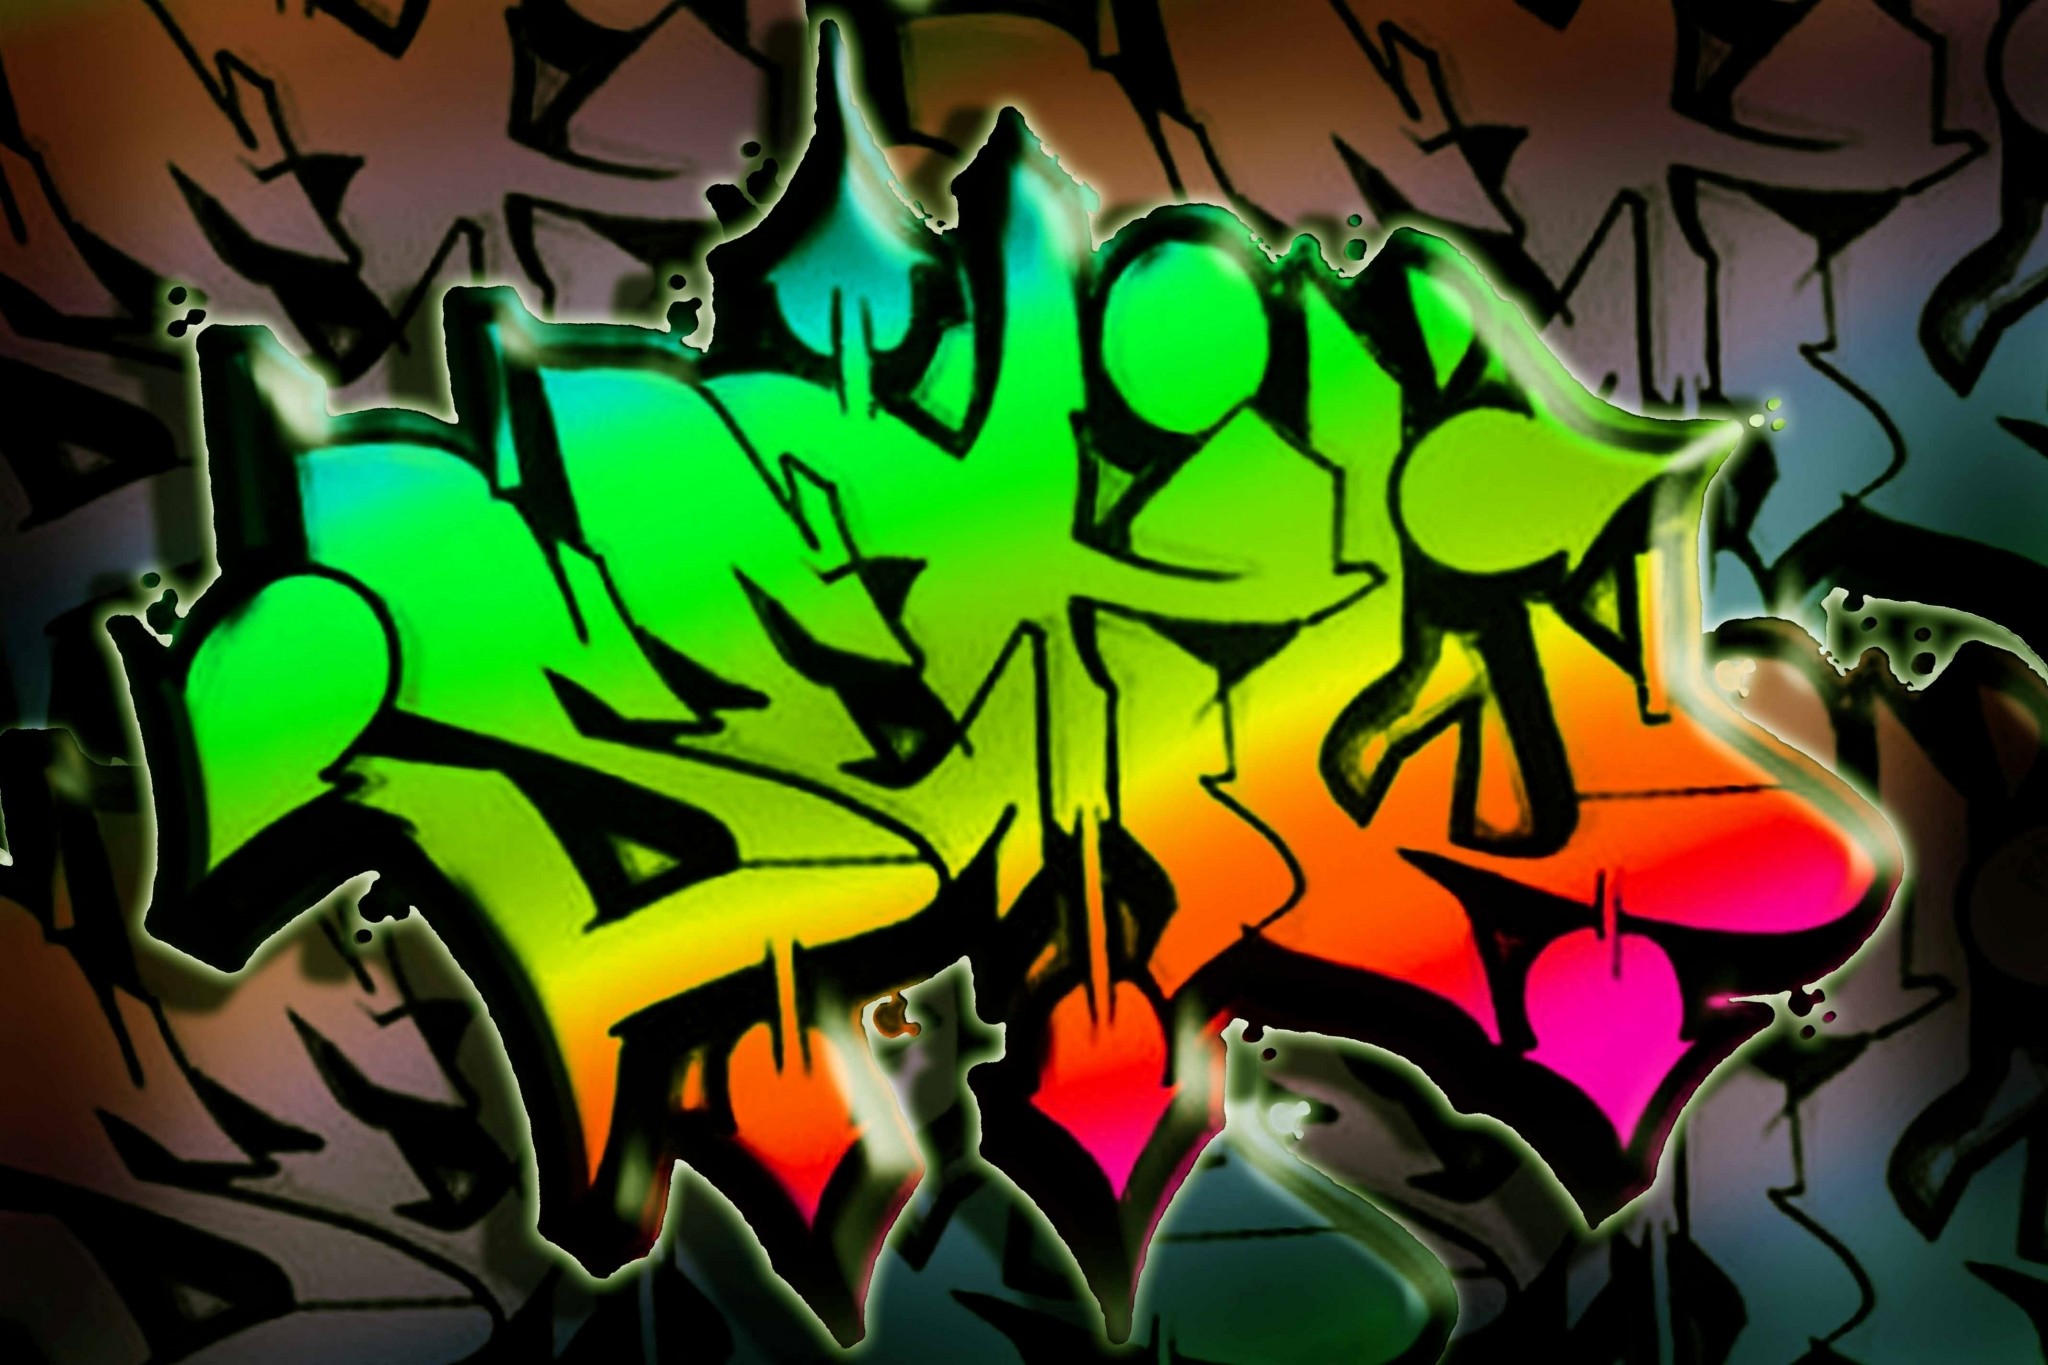 2048x1365 graffiti wallpaper full hd